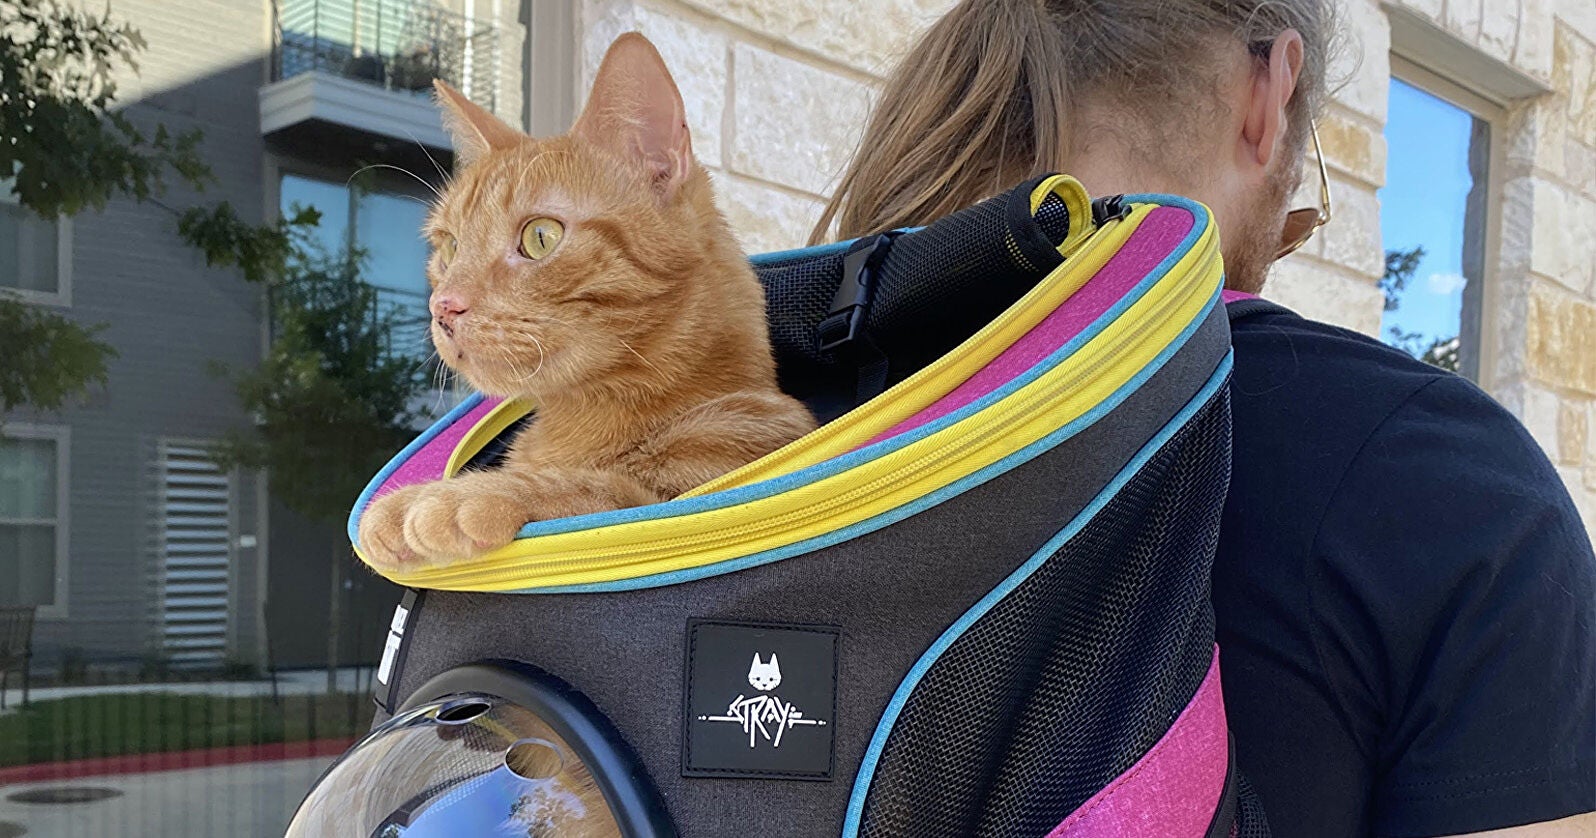 Imagen para Anunciada una mochila para transportar gatos oficial de Stray